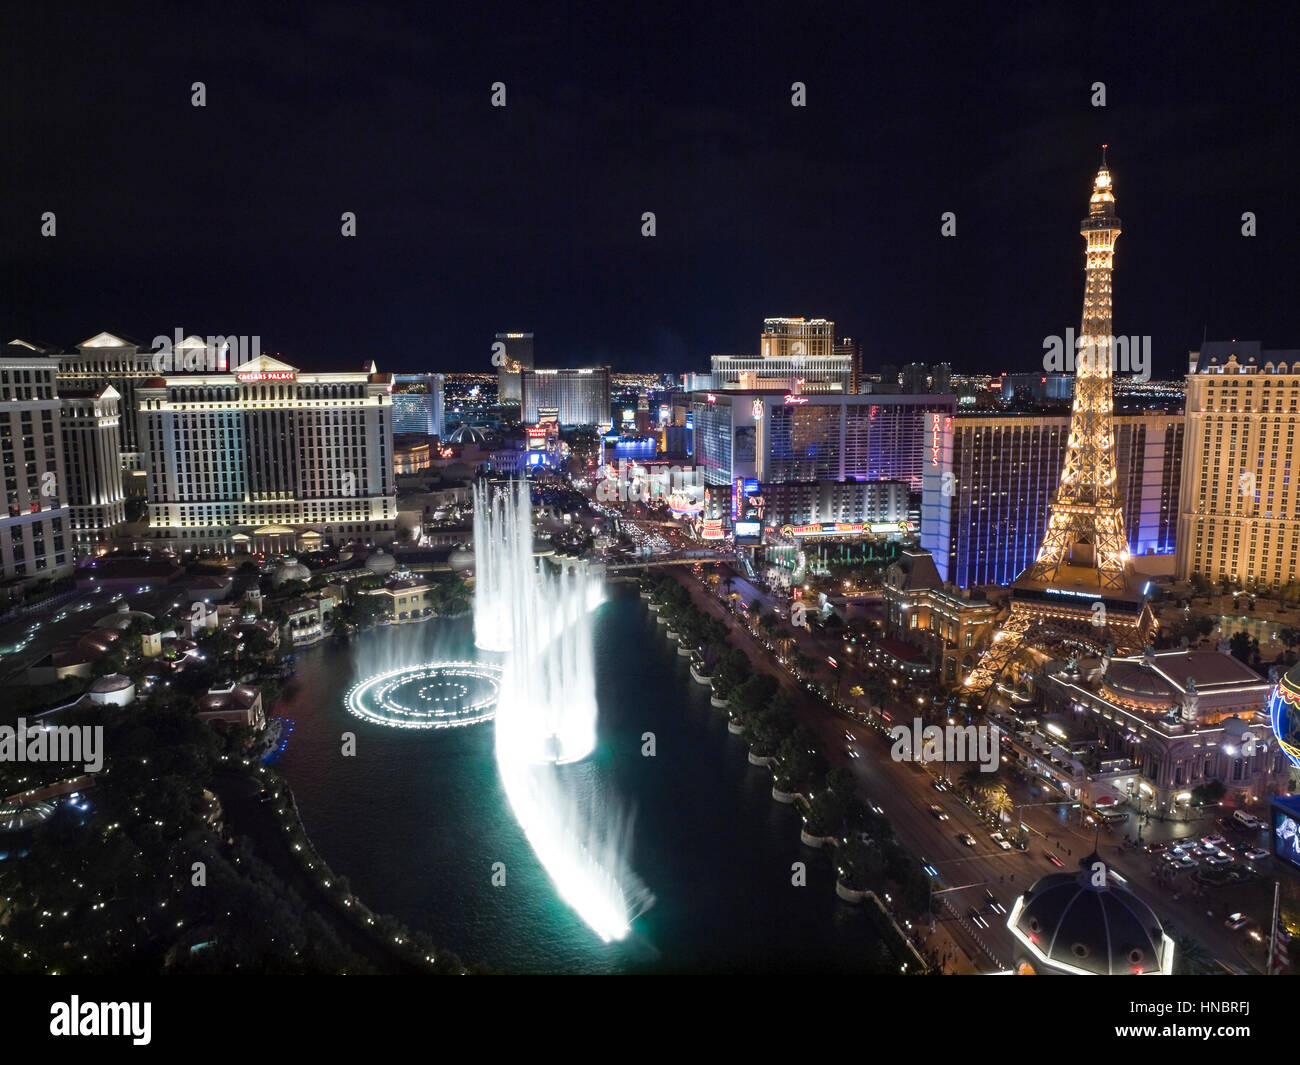 Las Vegas, Nevada, USA - 6 octobre, 2011 : nuit vue vers Bellagio, Paris, Caesars Palace et d'autres hôtels sur le Strip de Las Vegas. Banque D'Images